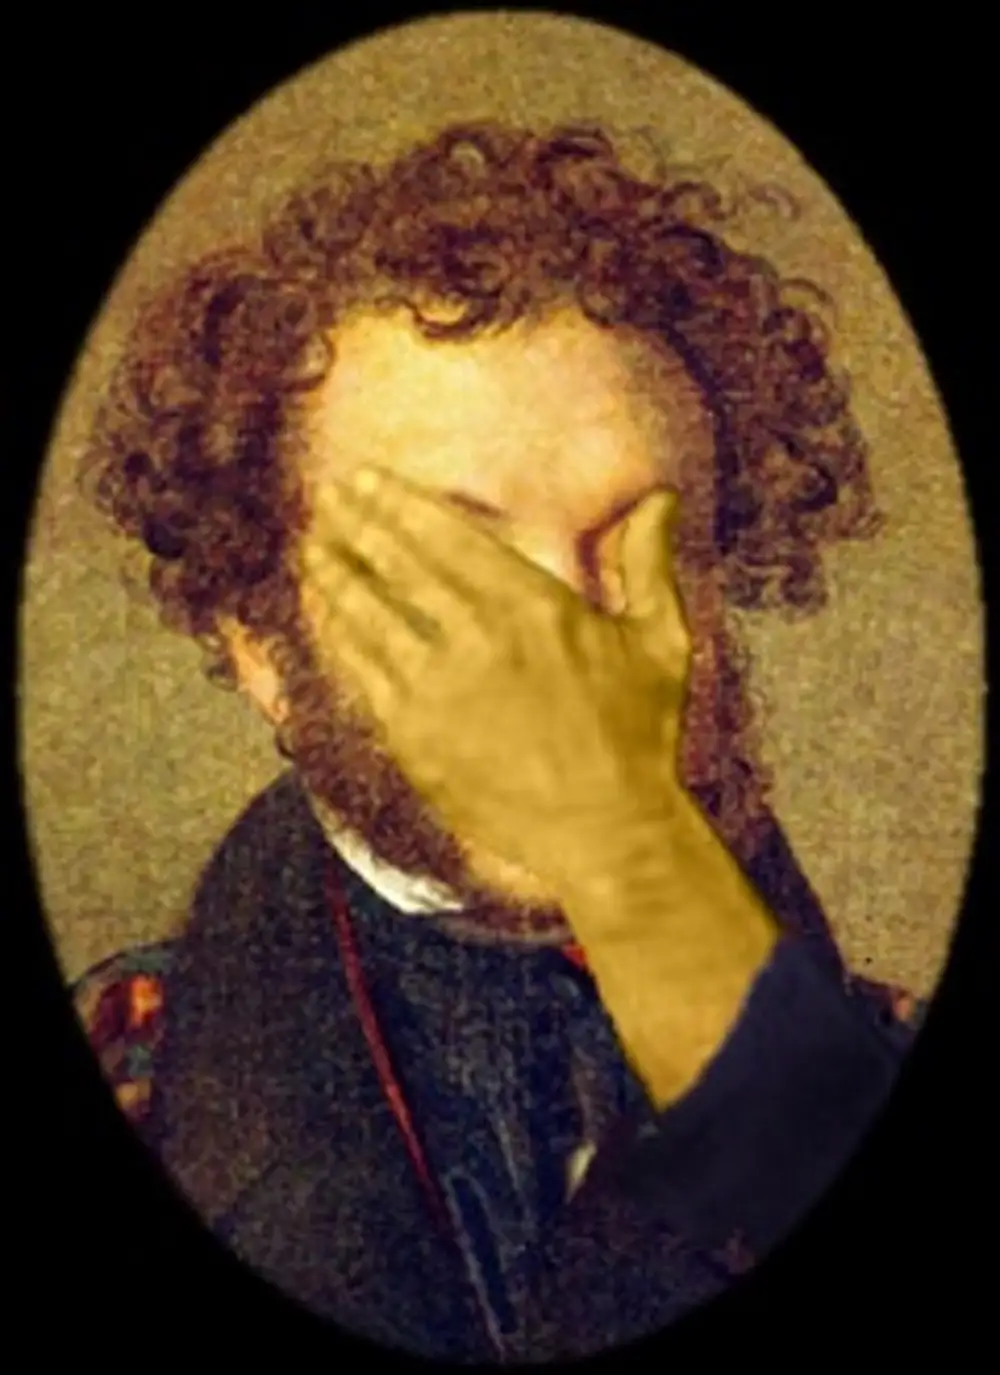 Пушкин закрывает лицо